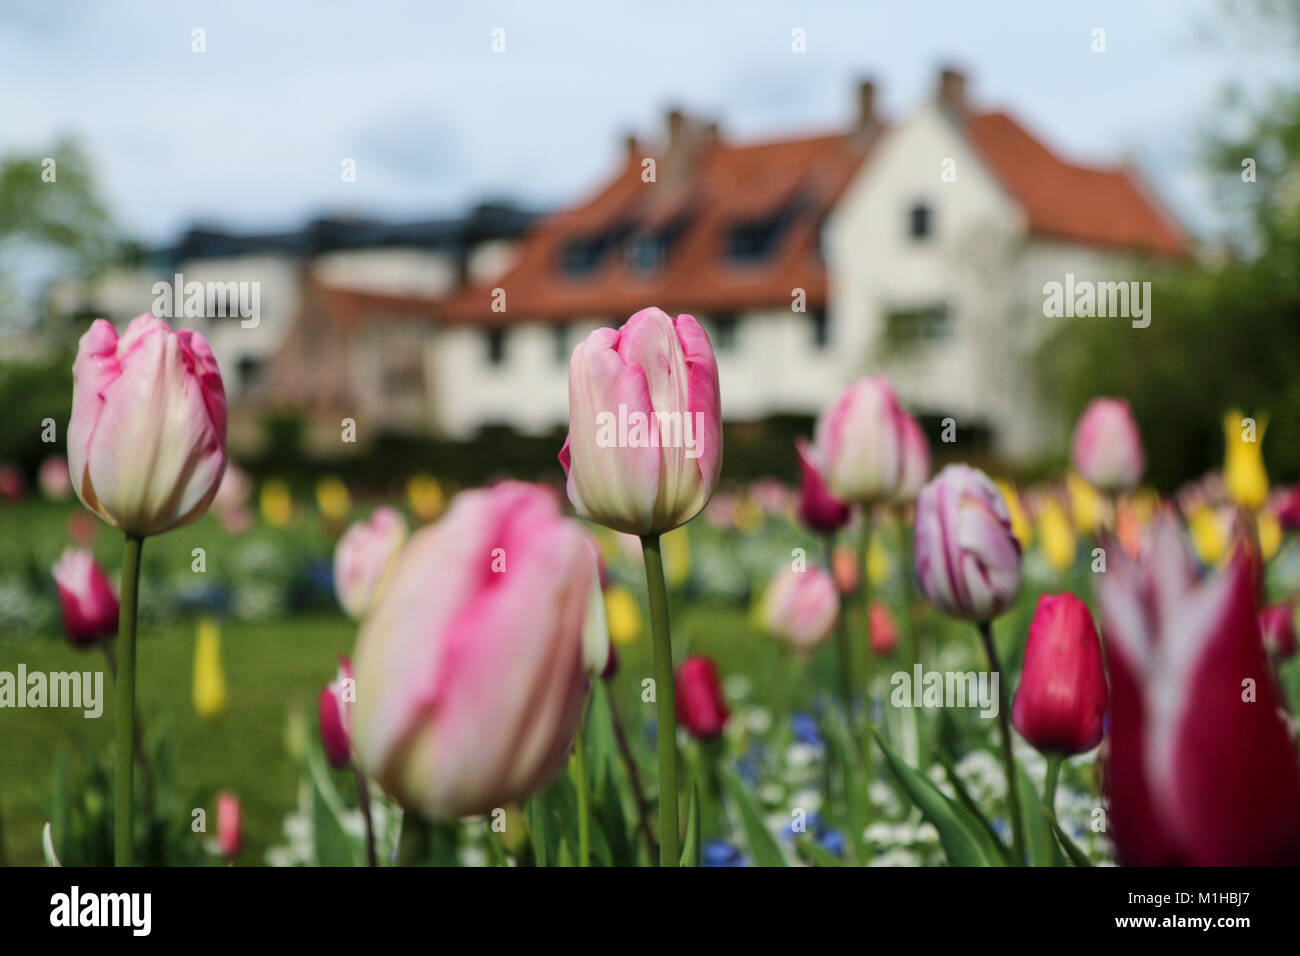 Una foto da un tulipano garden nei Paesi Bassi. La colorata tulip è in dettaglio tra gli altri. Fioriture bellissime sono ovunque Foto Stock